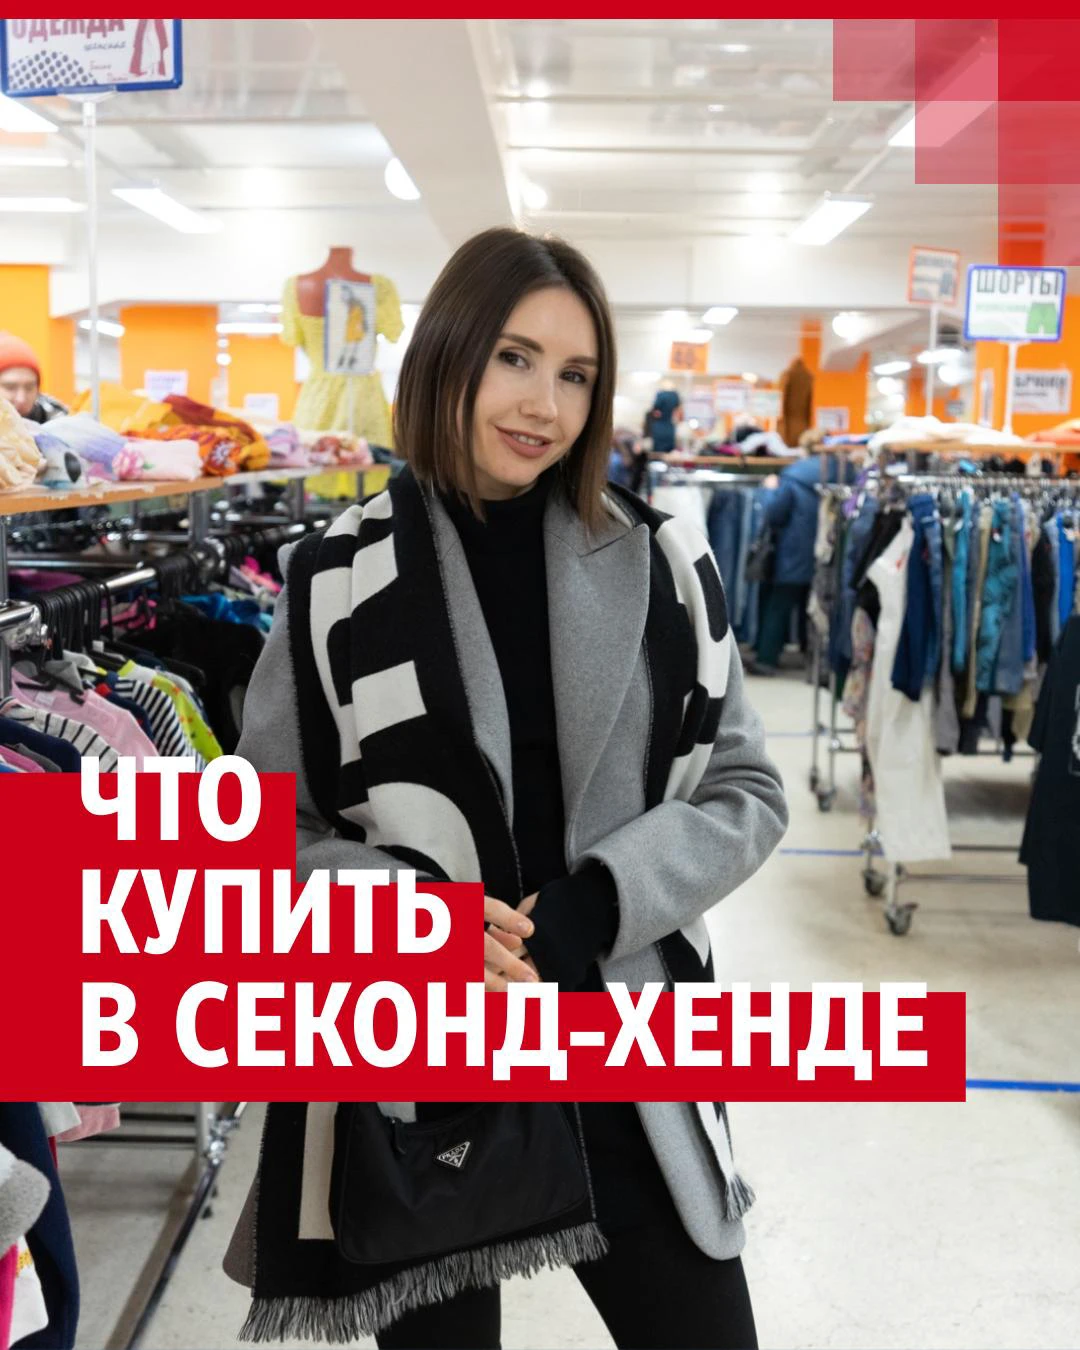 Почему одеваться в секонд-хендах — это круто? Объясняет стилист устойчивой моды из Красноярска